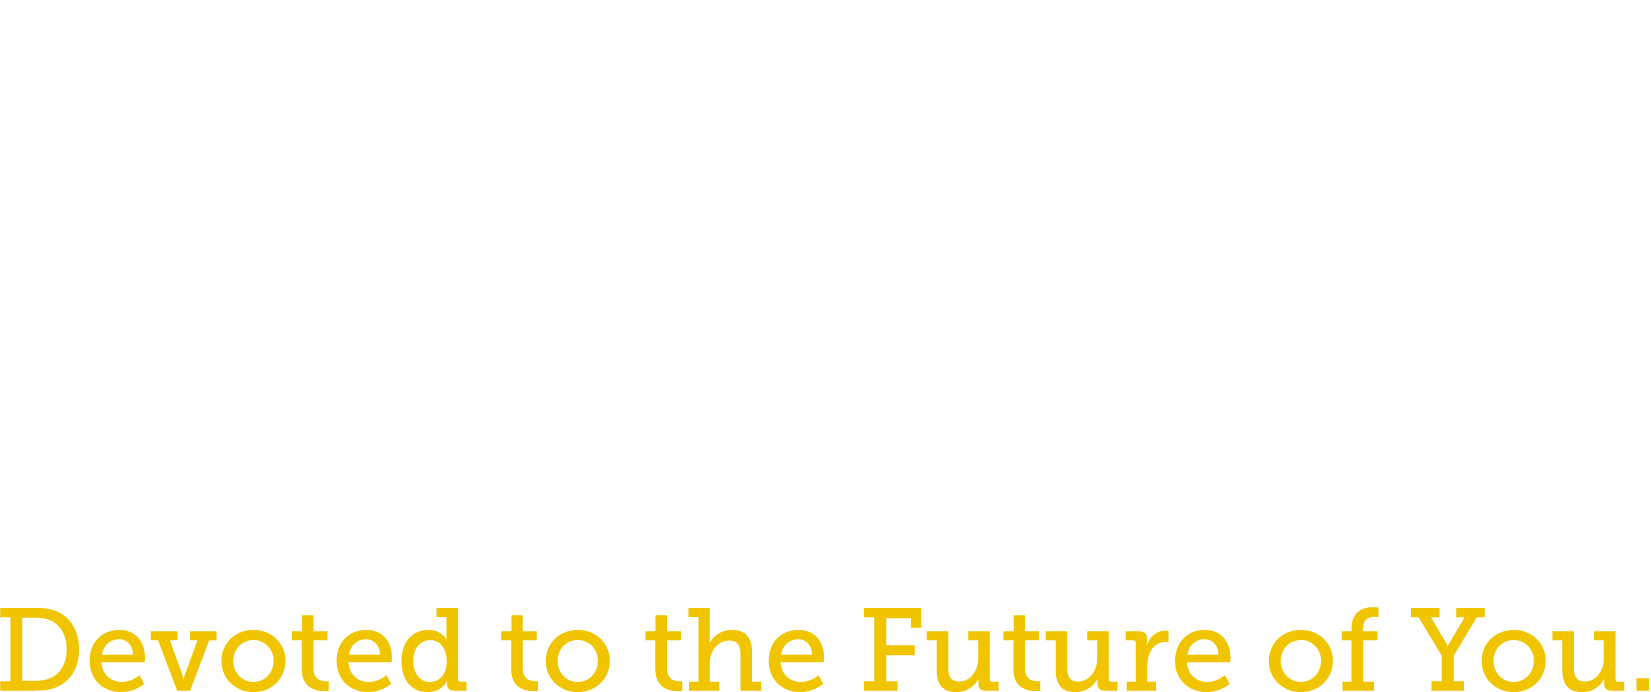 Carlow University homepage